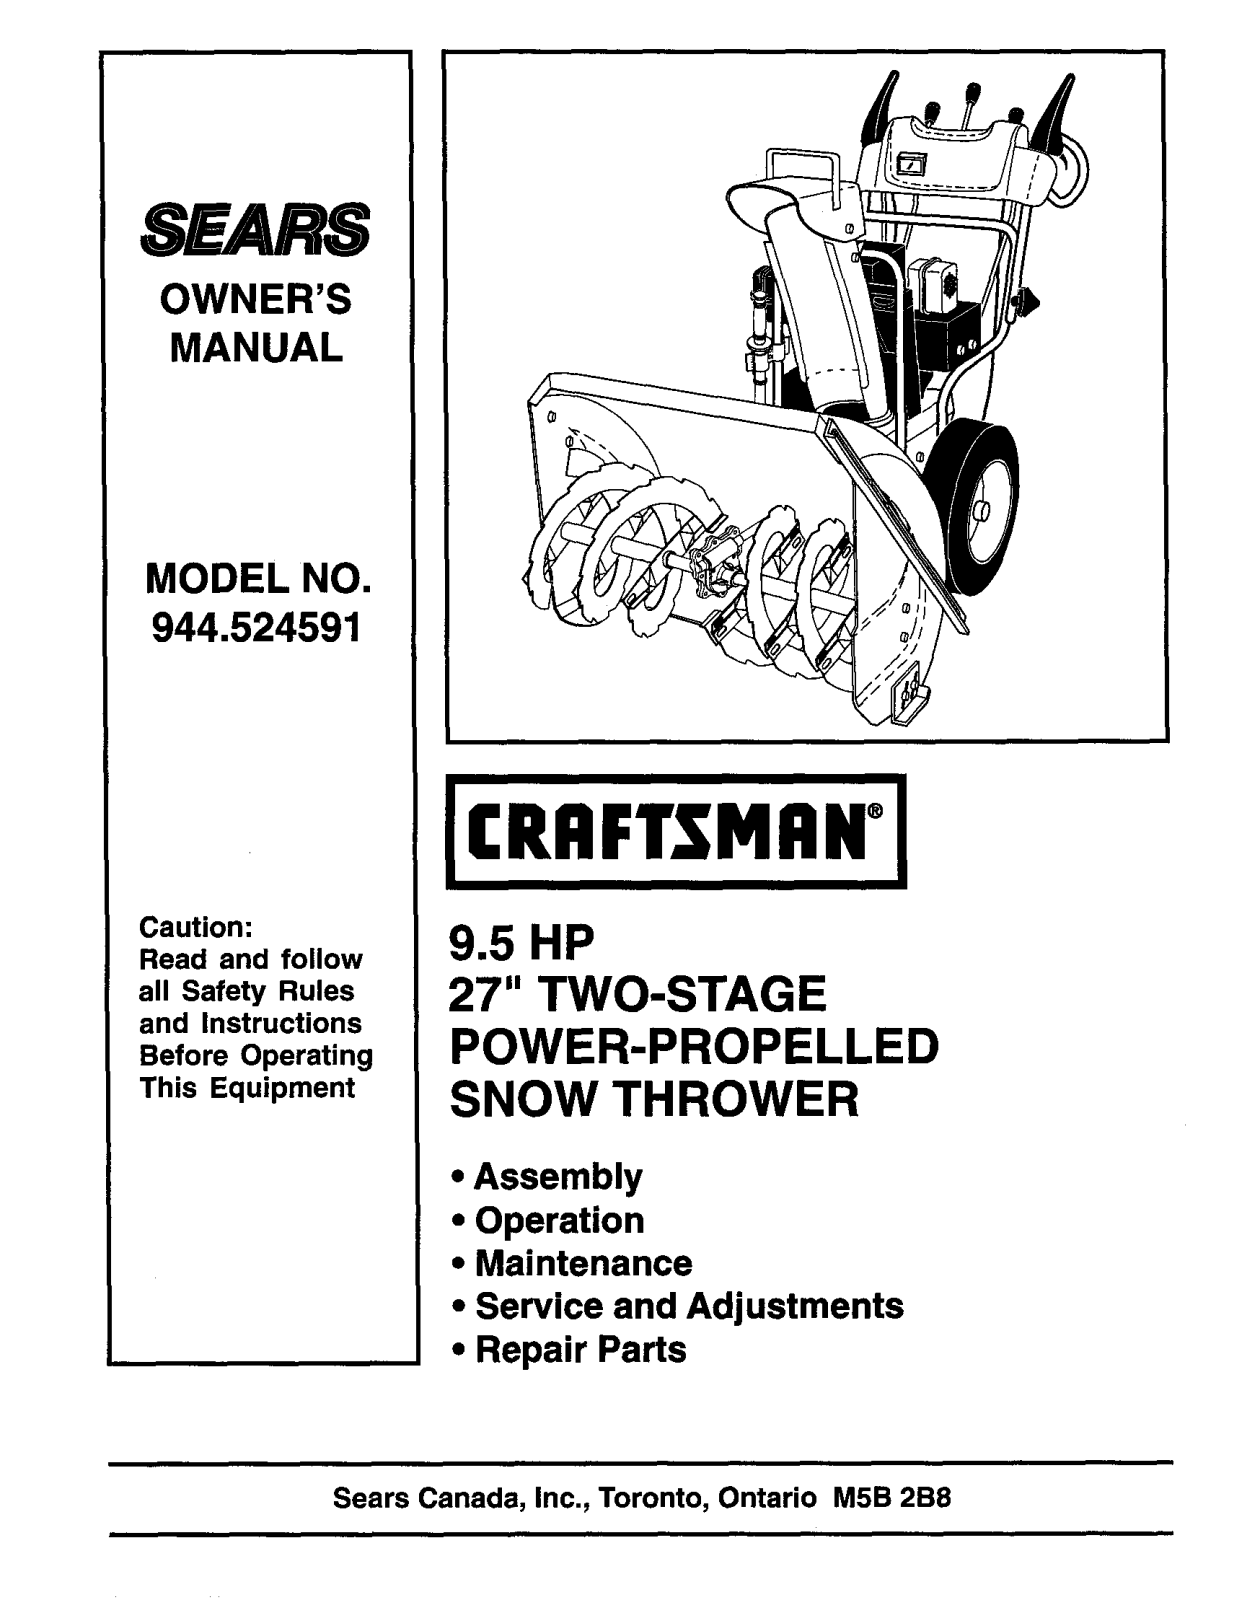 Craftsman 944.524591 User Manual